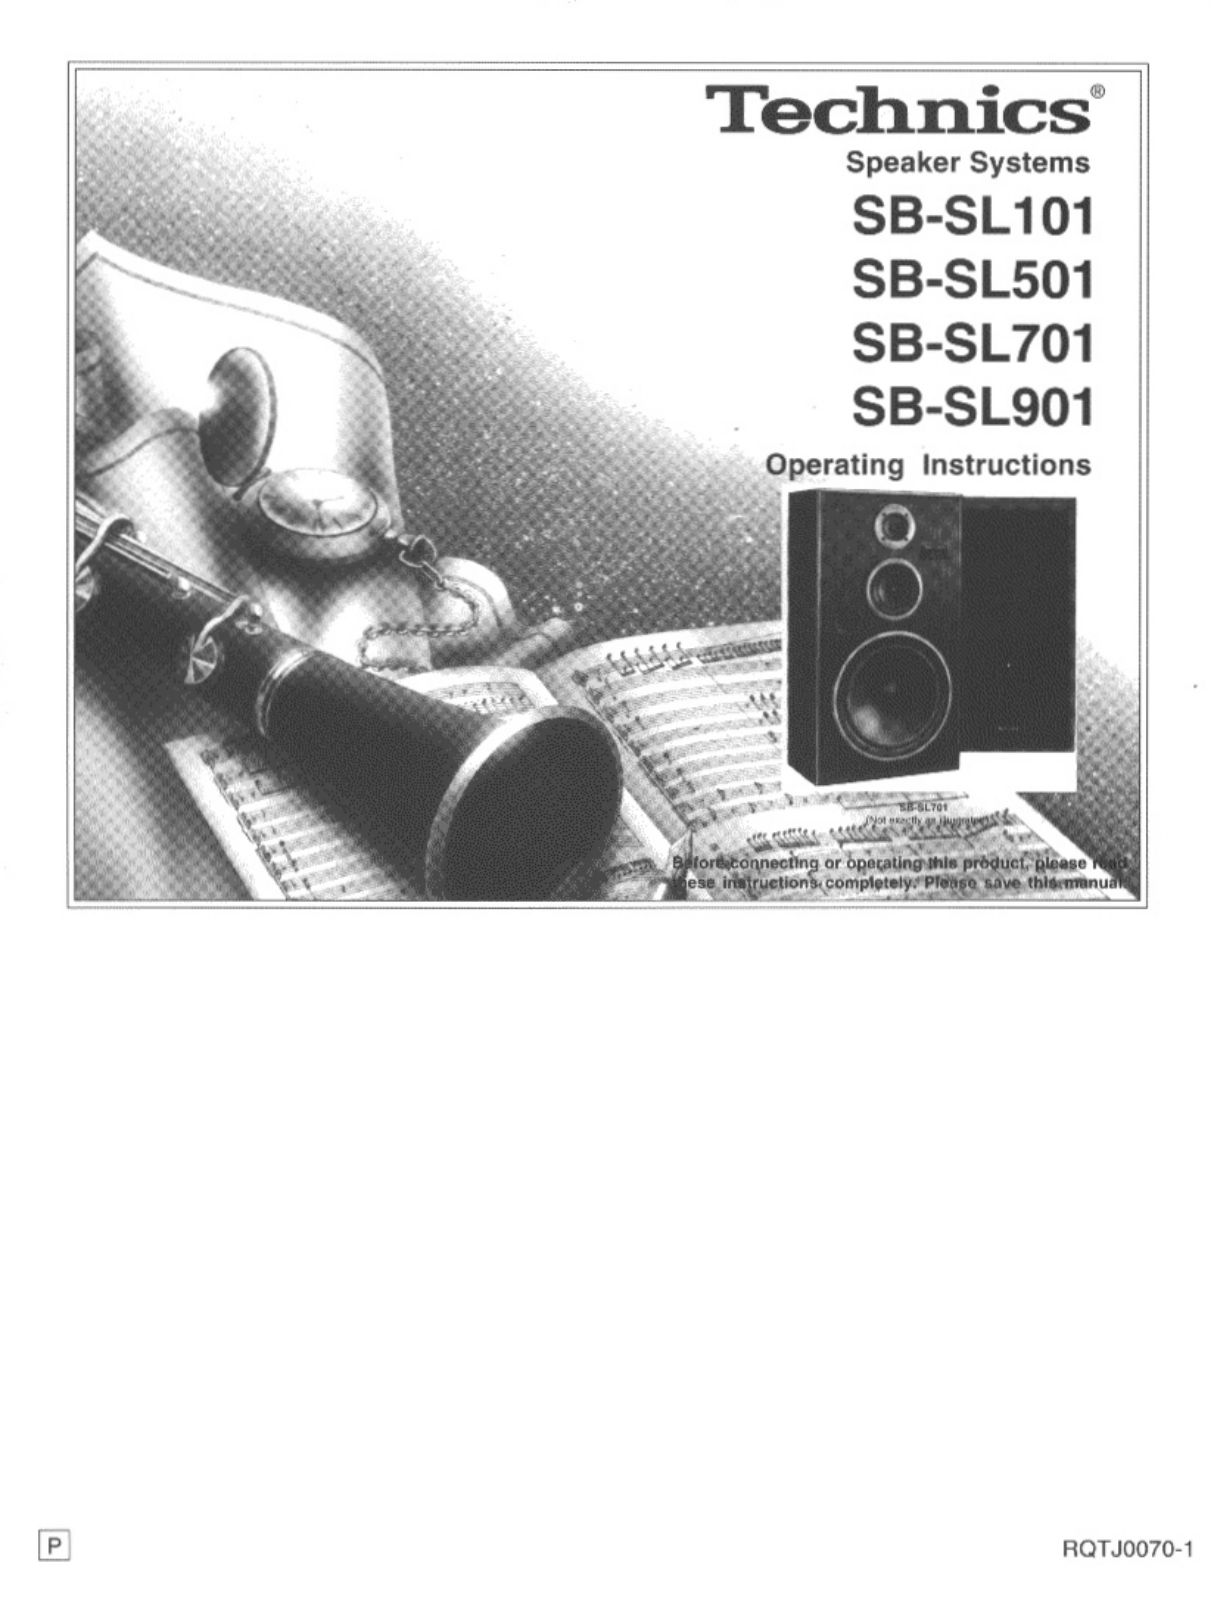 Technics SB-SL901, SB-SL701, SB-SL501 Owners Manual